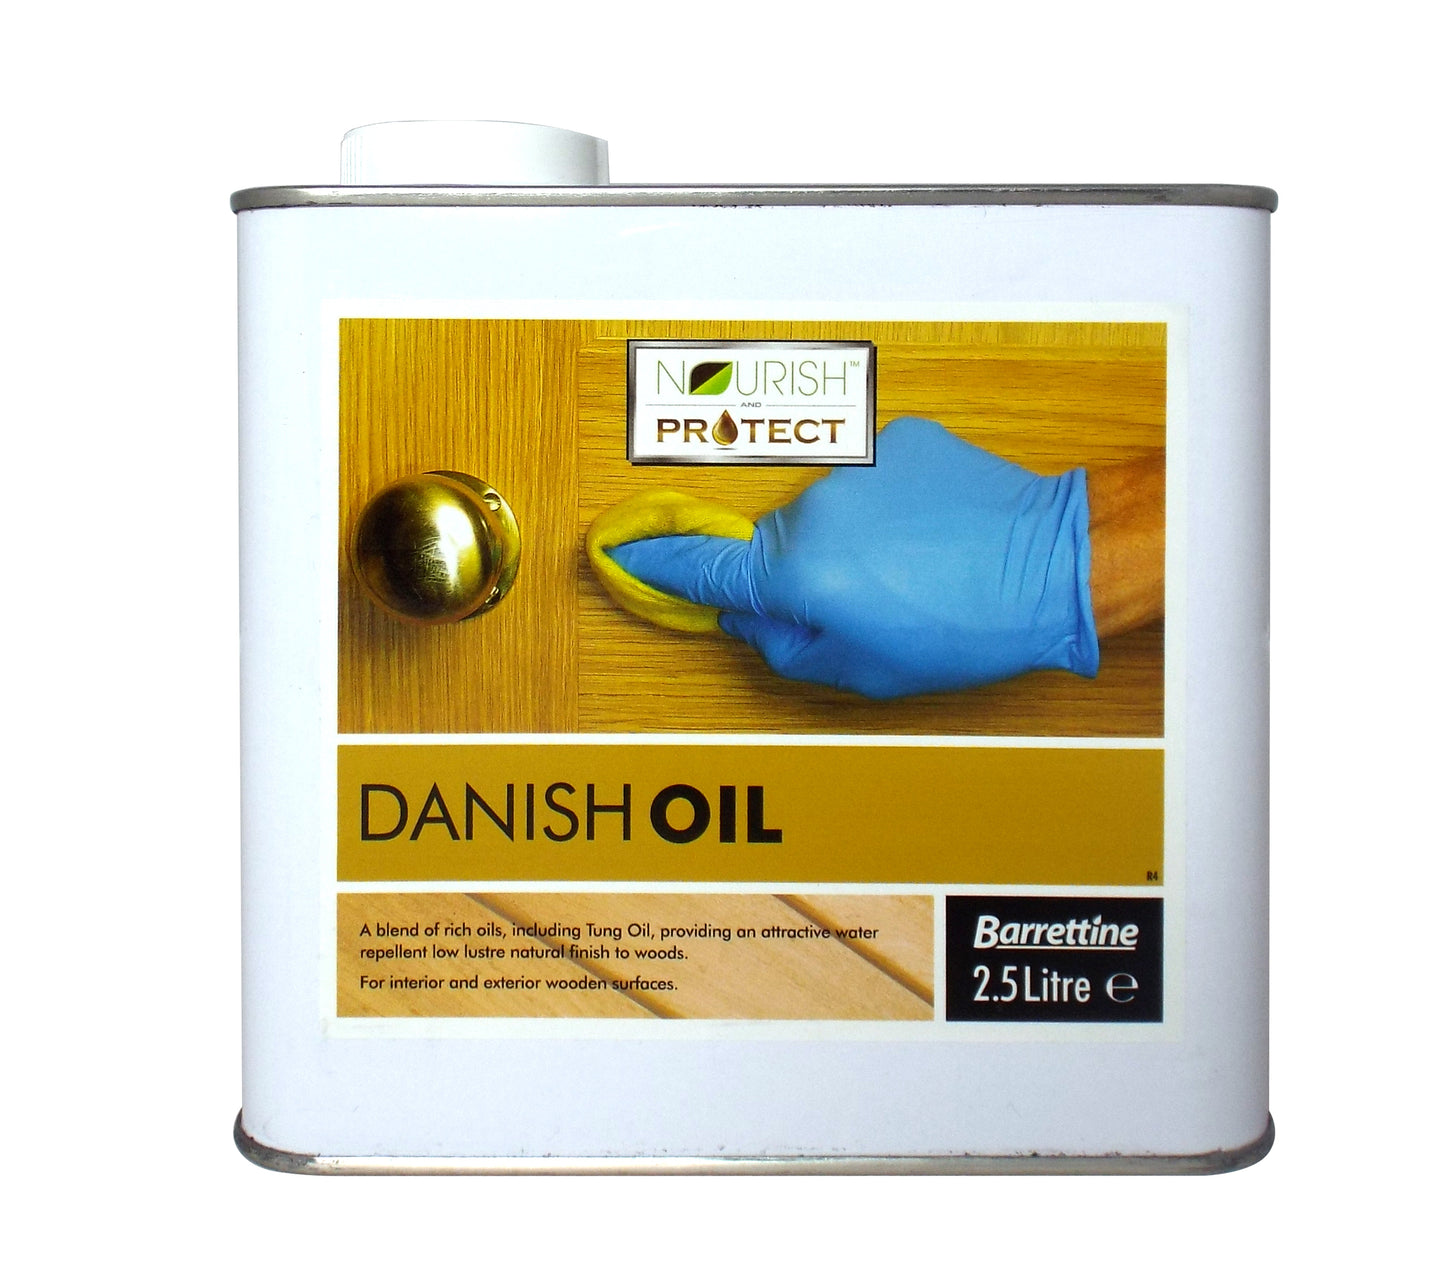 2.5 Litre Danish Oil for wood and worktops natural blend of food safe oils